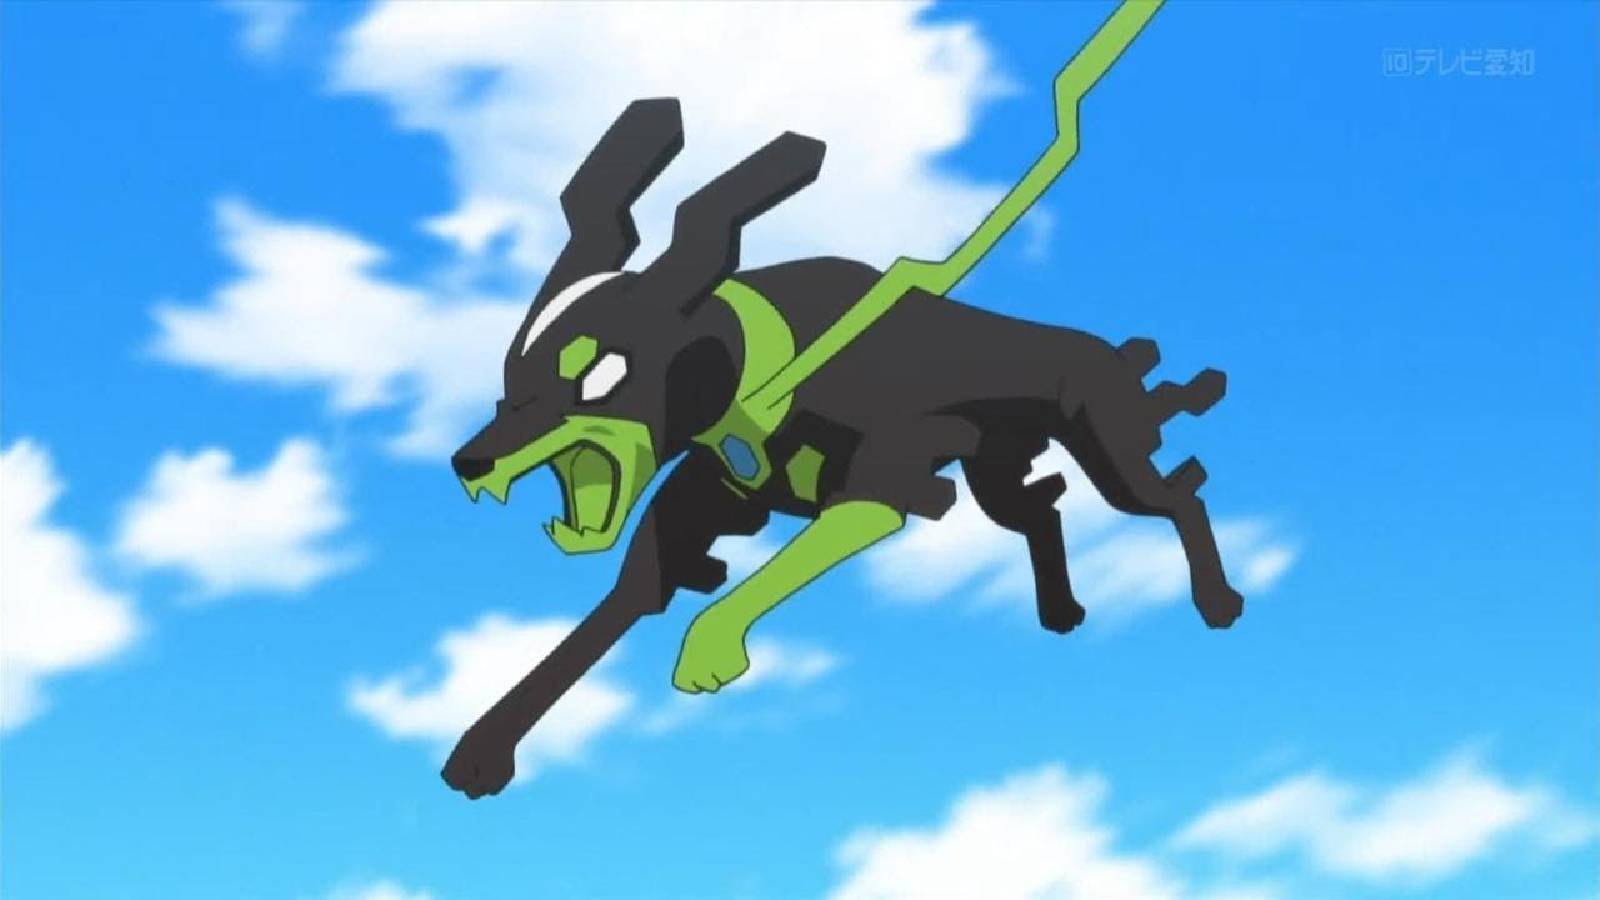 The Pokemon Zygarde leaps through the air